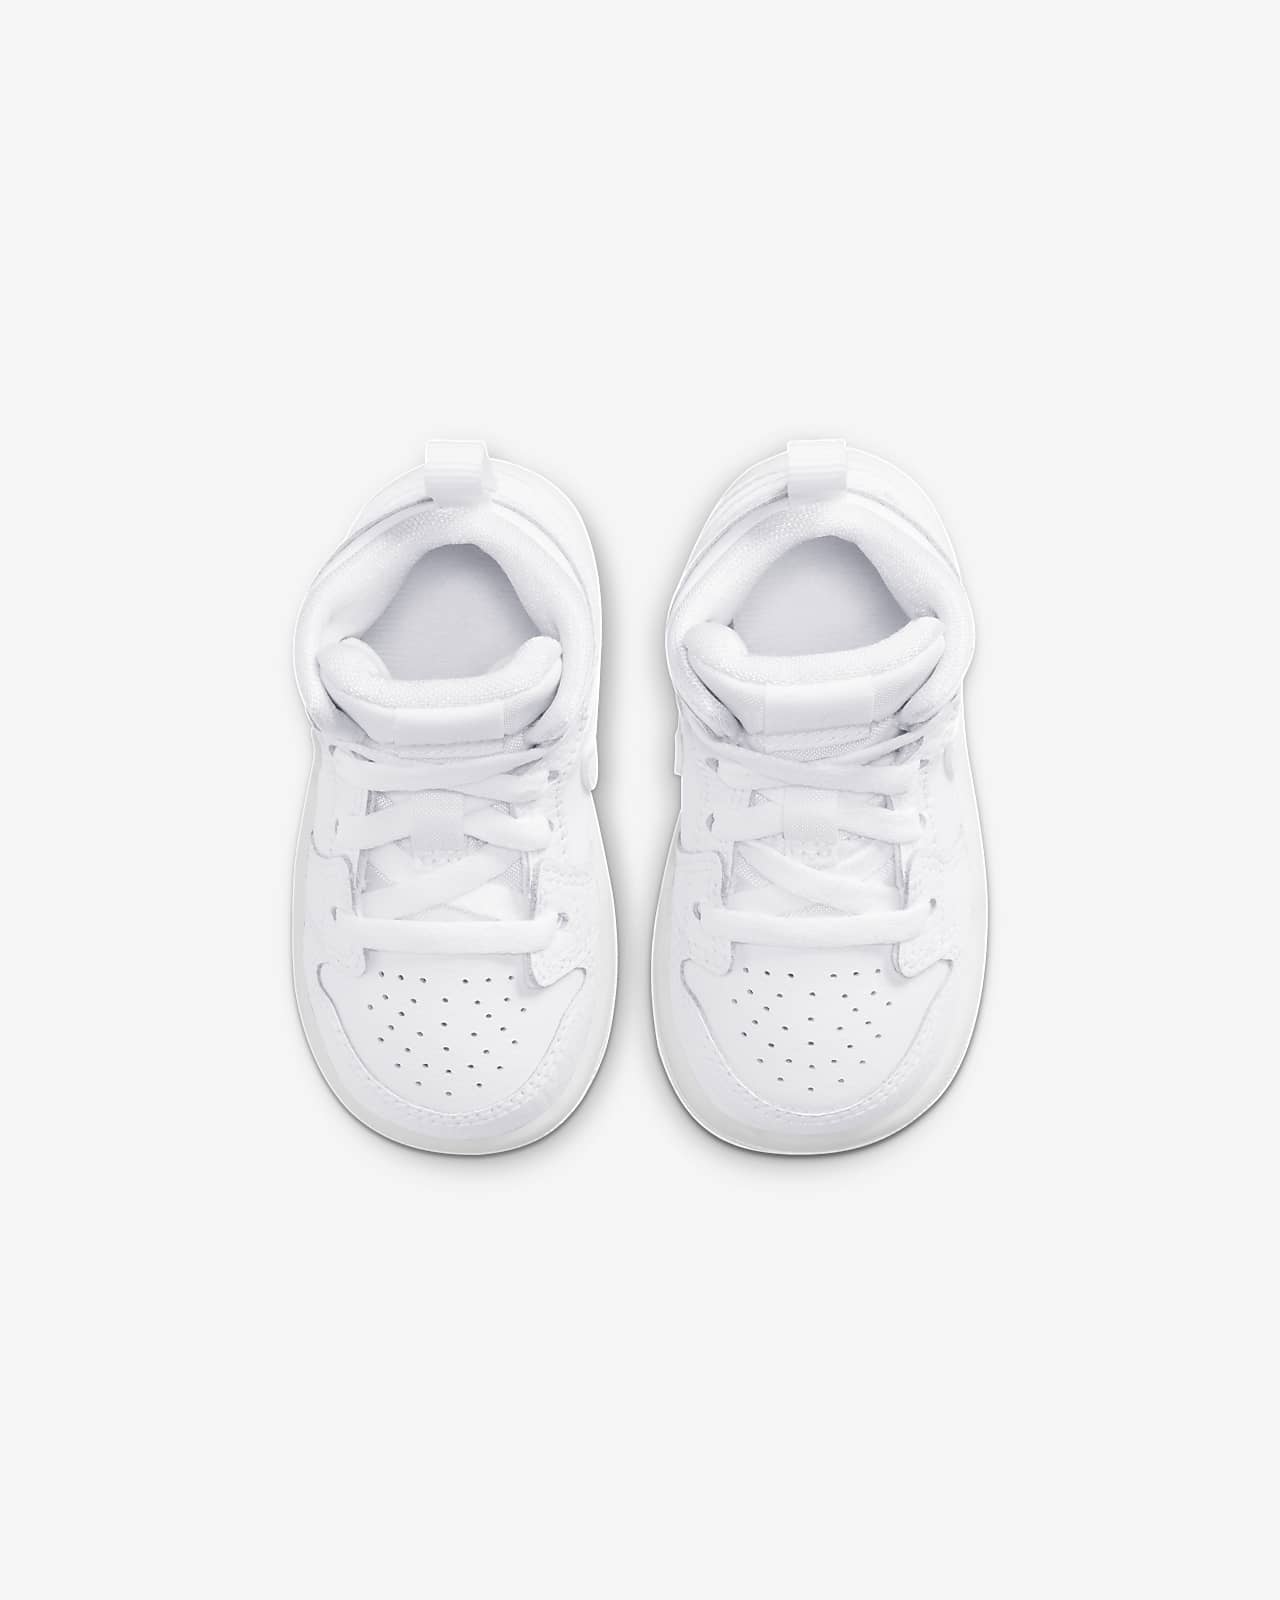 Jordan 1 Mid Baby and Toddler Shoe. Nike AE